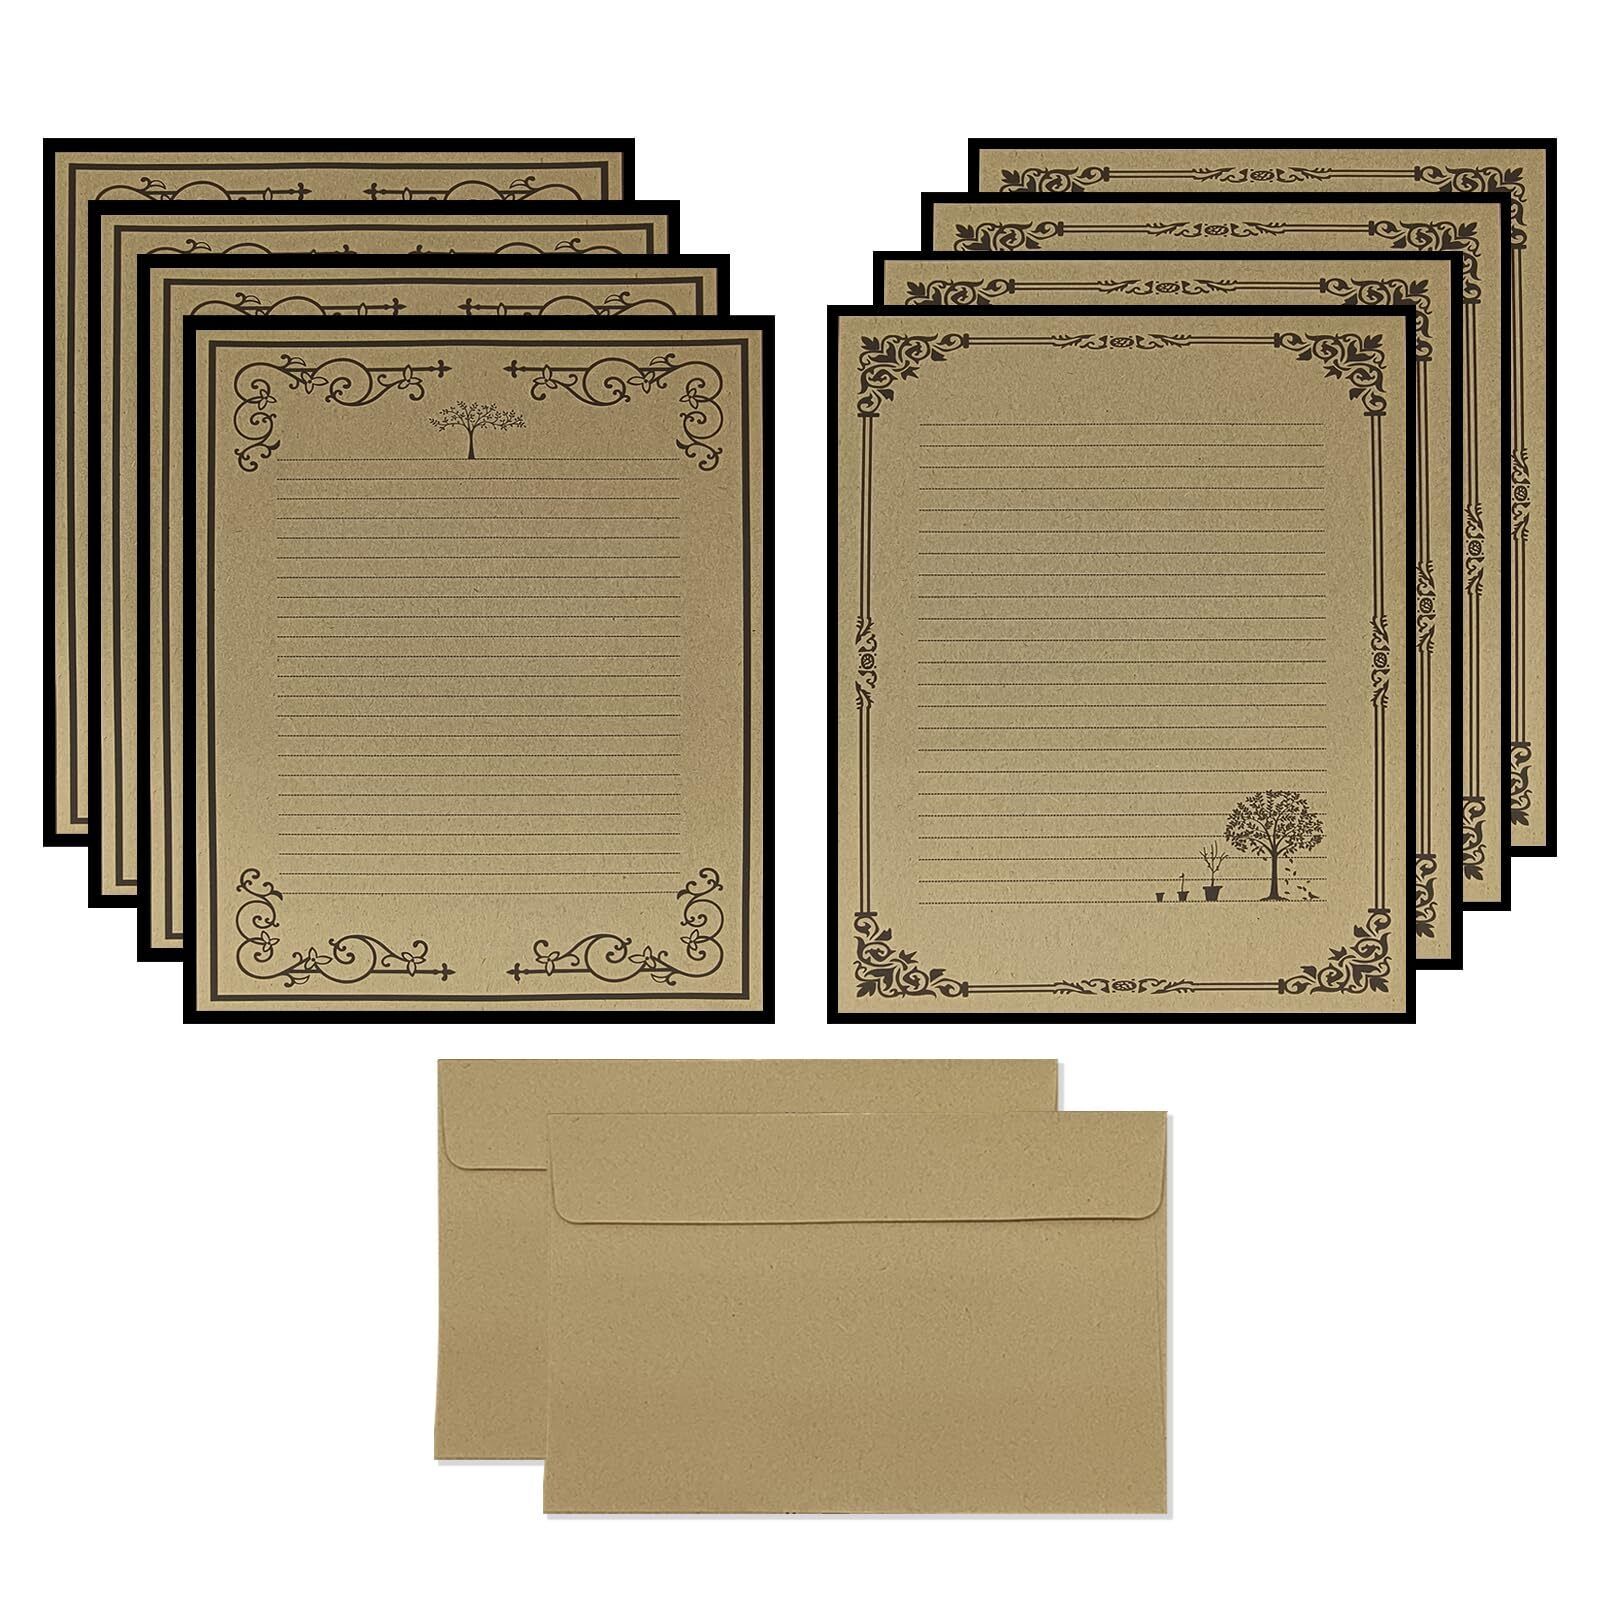 Total 72PCS Vintage Design Stationary Paper and Envelope Set - 48 Lined Lette...